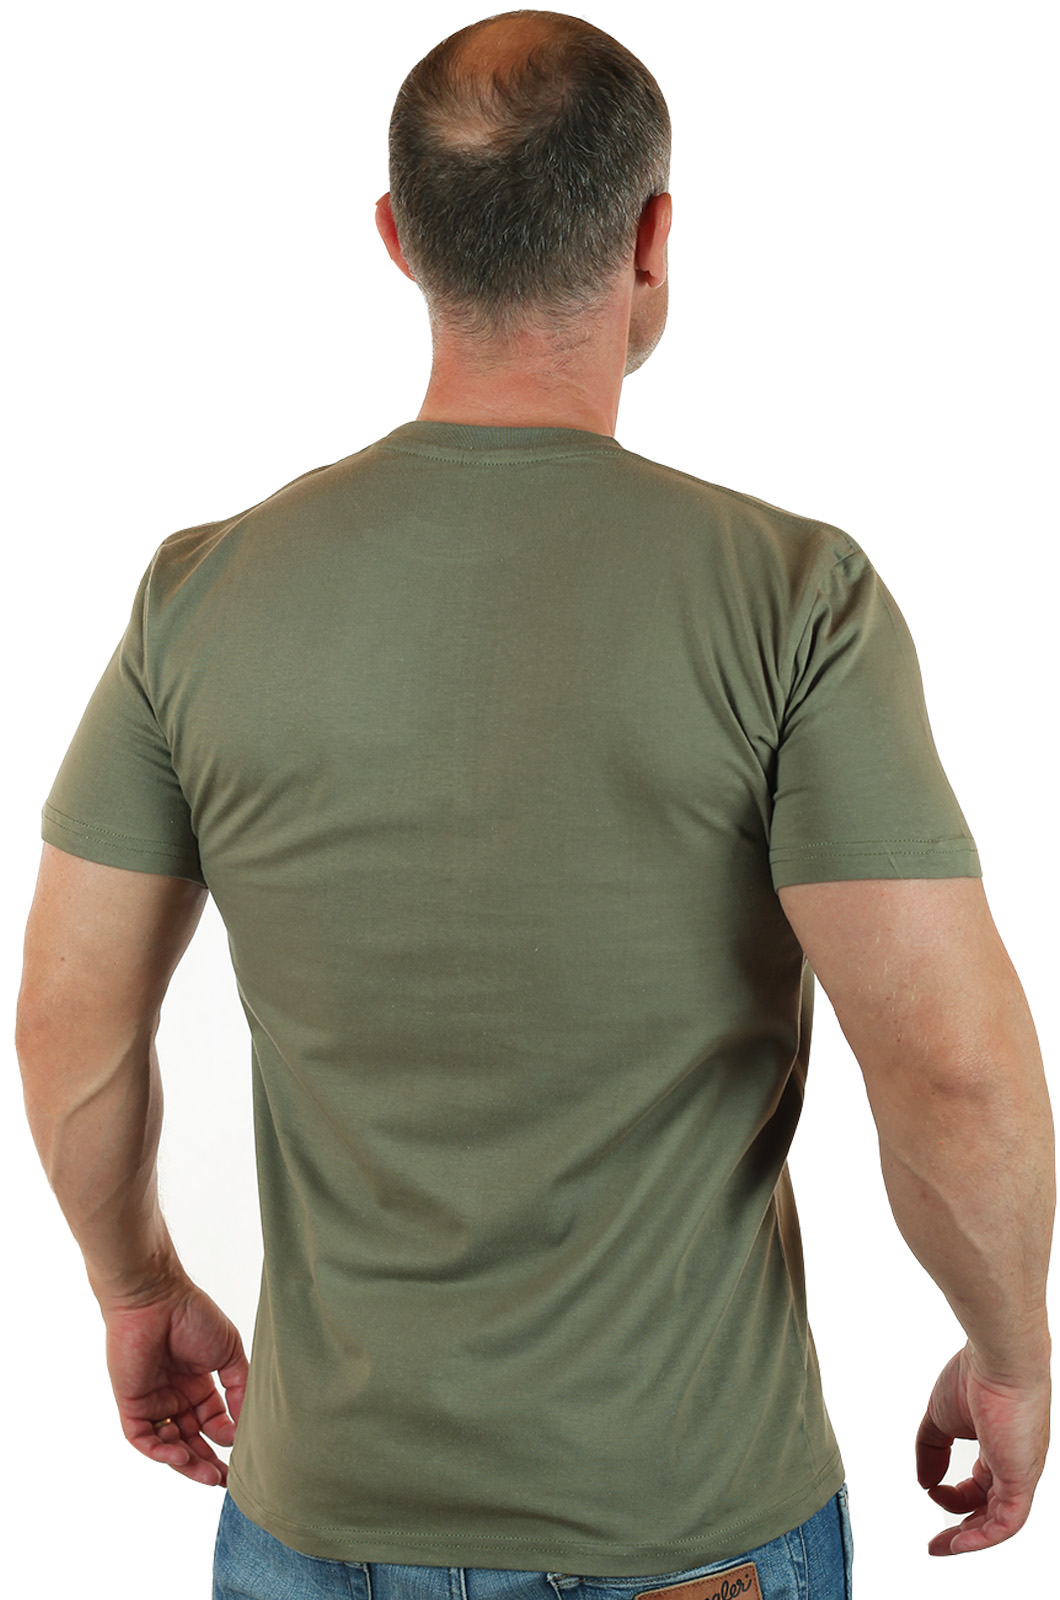 Дешевые футболки для мужчин – натуральный хлопок, классический фасон, быстрая доставка